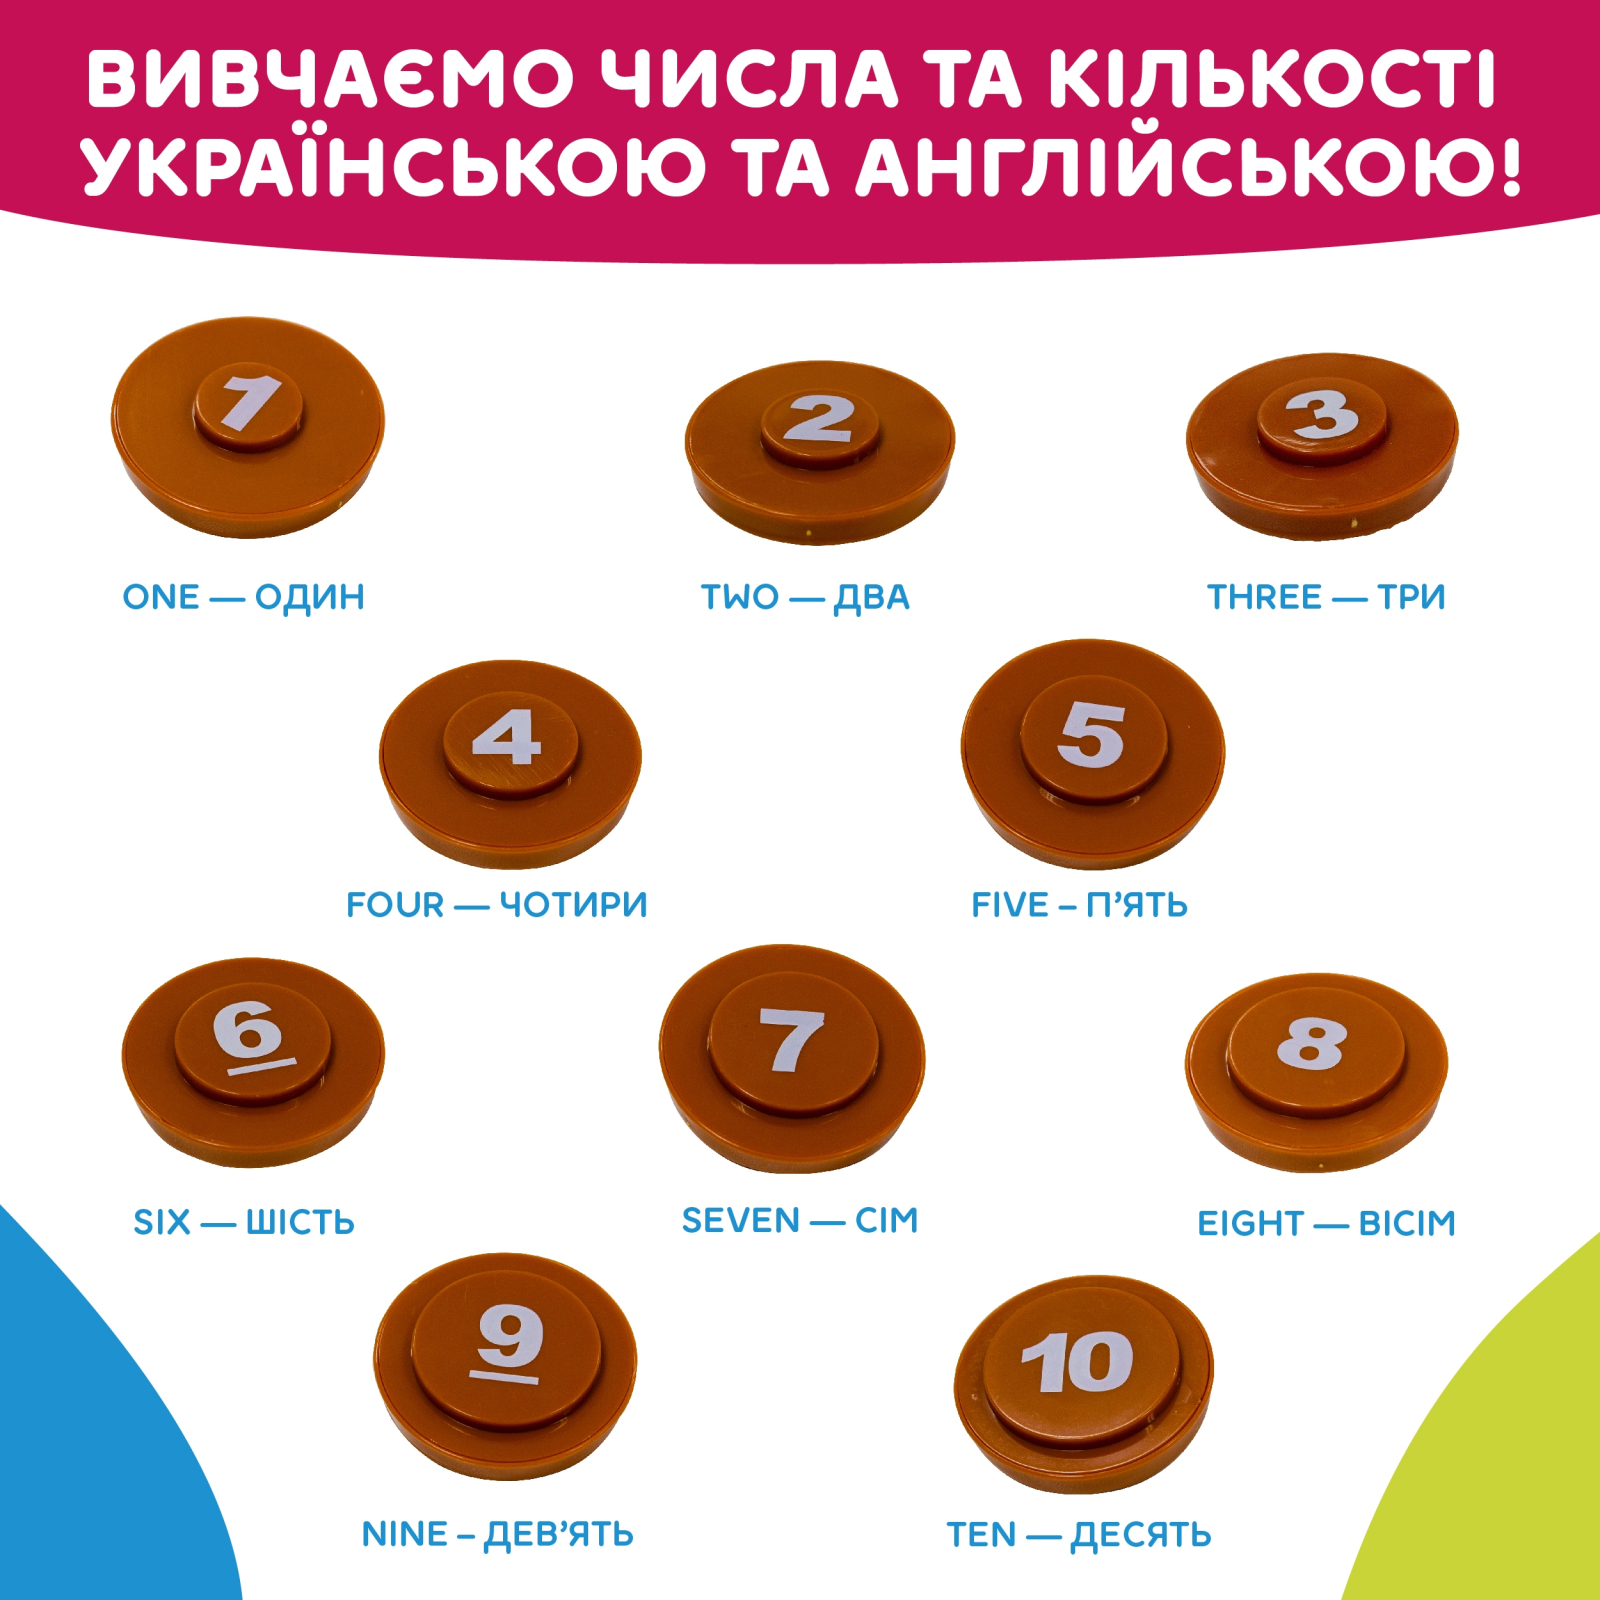 Развивающая игрушка Kiddi Smart Интерактивная обучающая игрушка Smart-Горшочек украинский и английский язык (524800) изображение 12